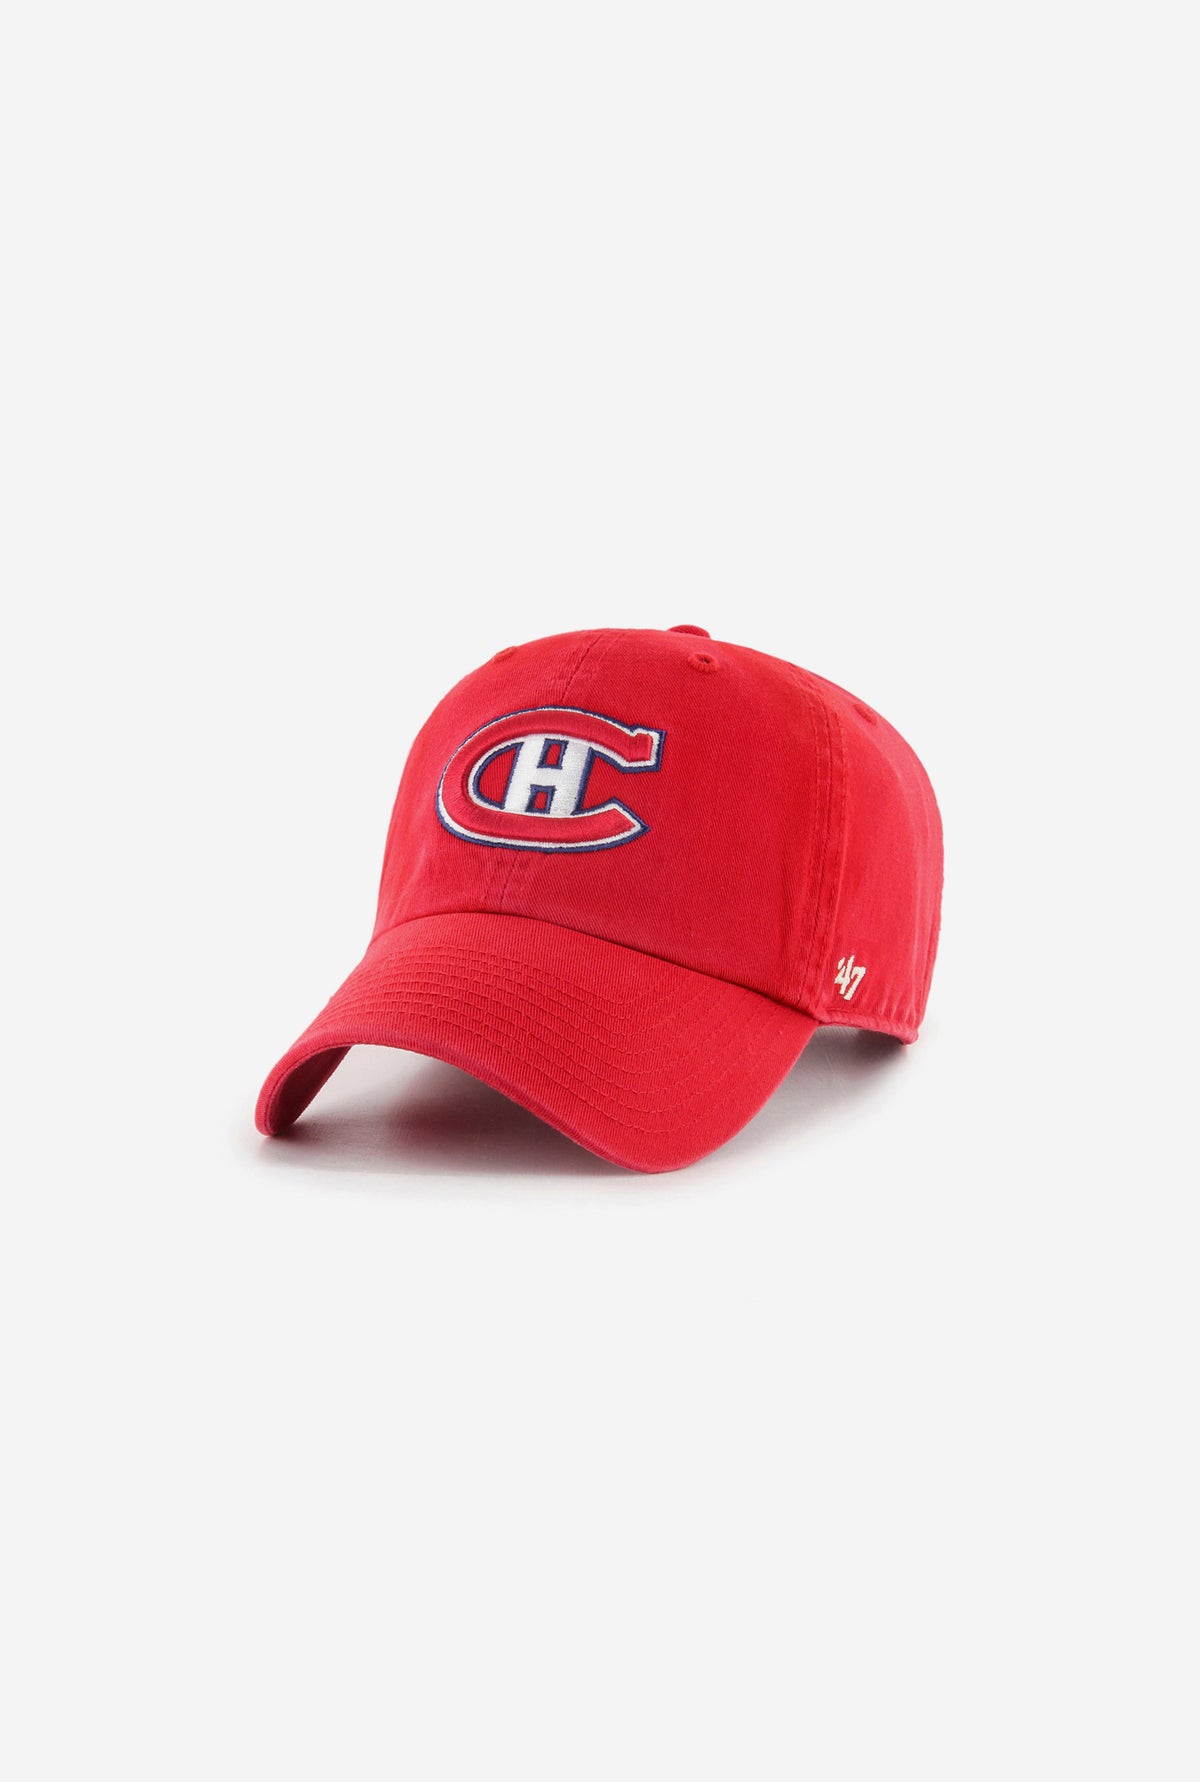 Montreal Canadiens Vintage Clean Up Cap